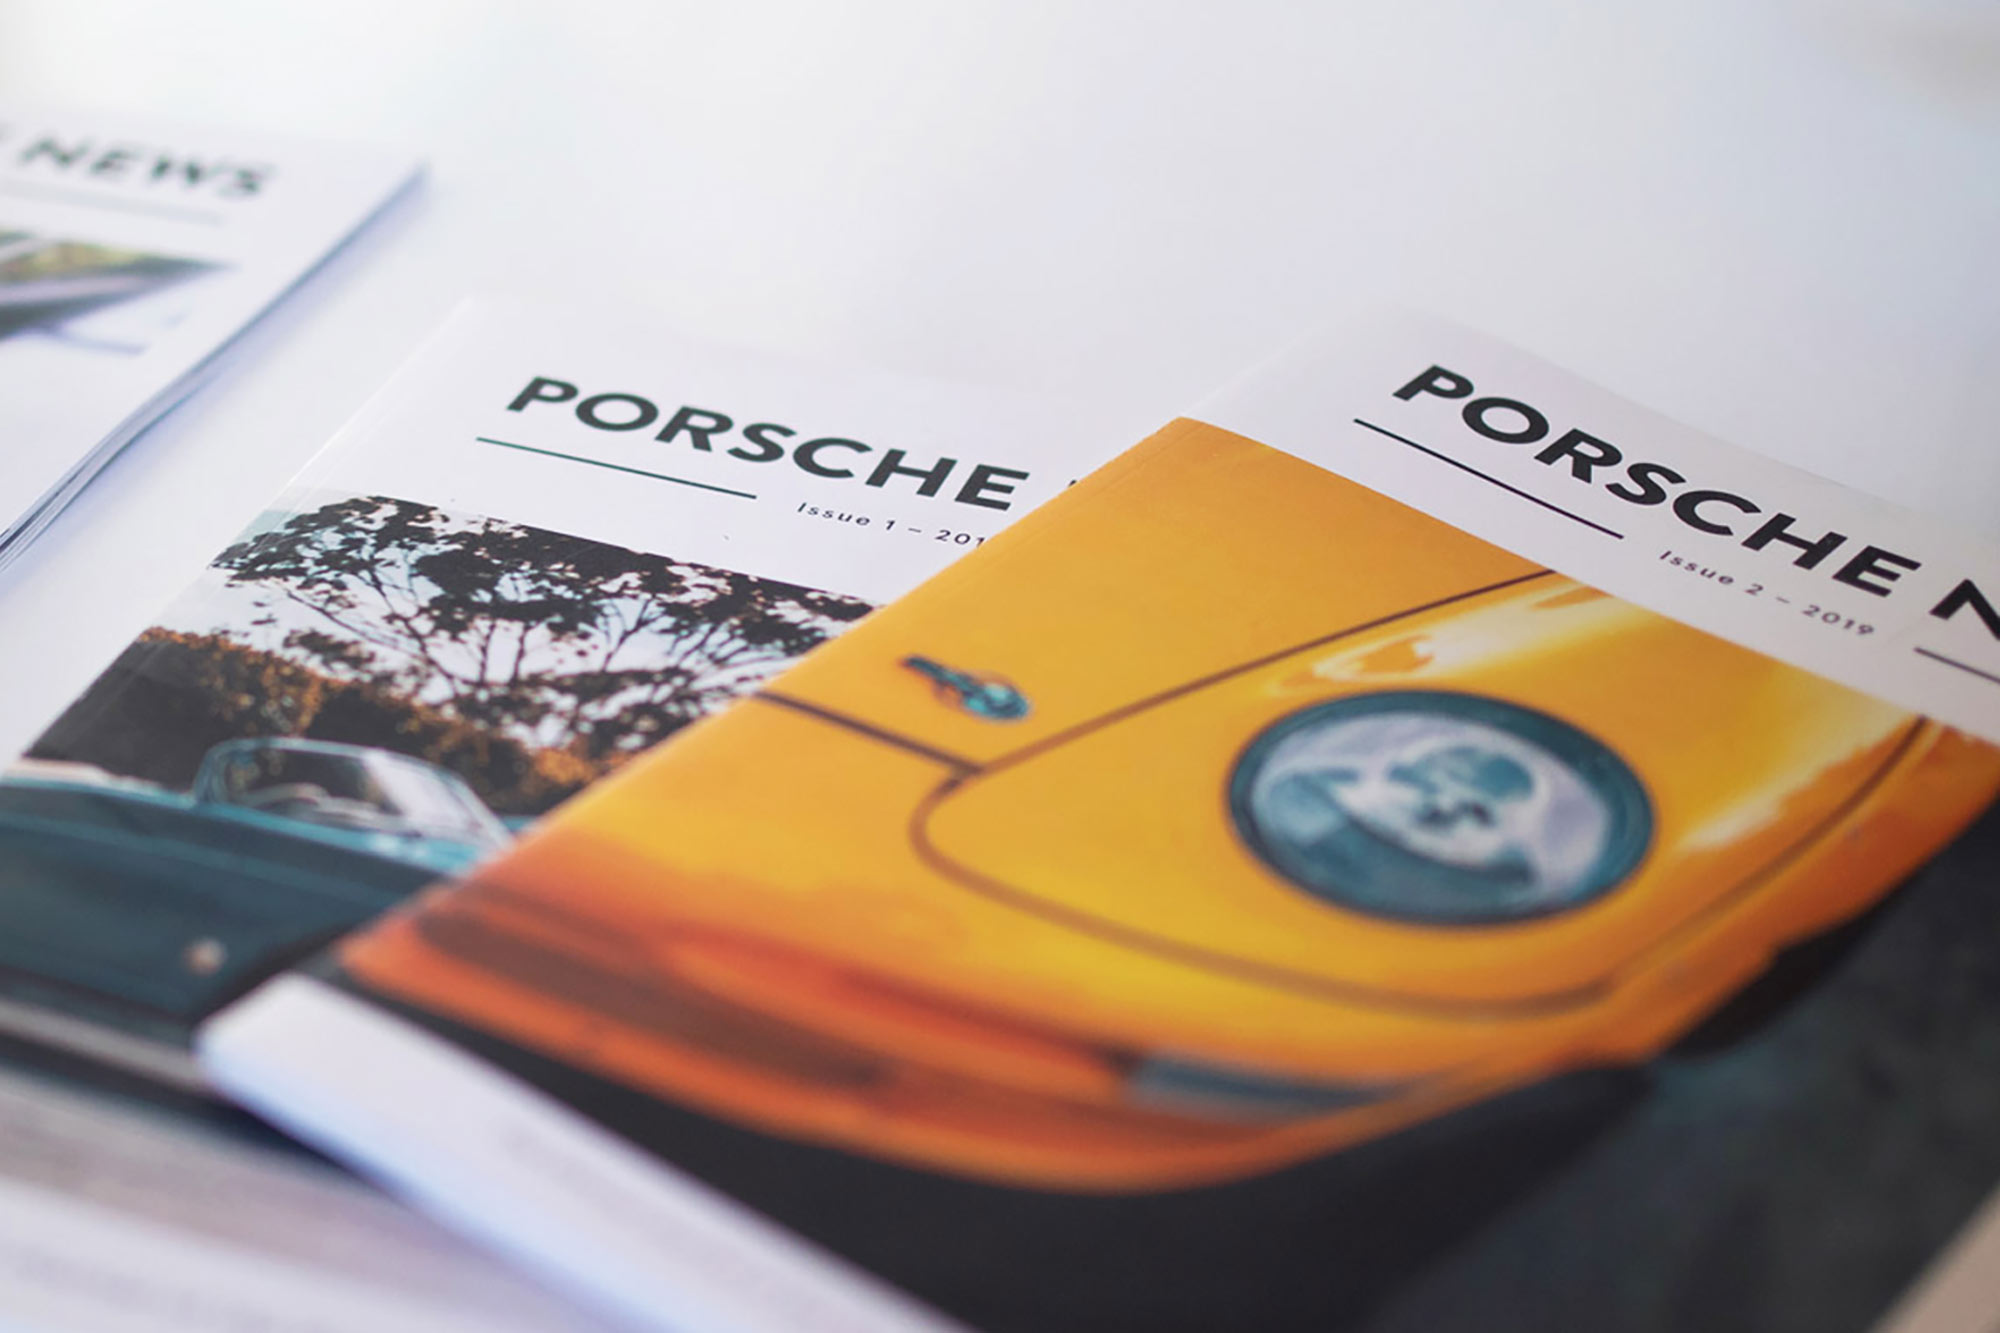 Print Design Brisbane - Porsche